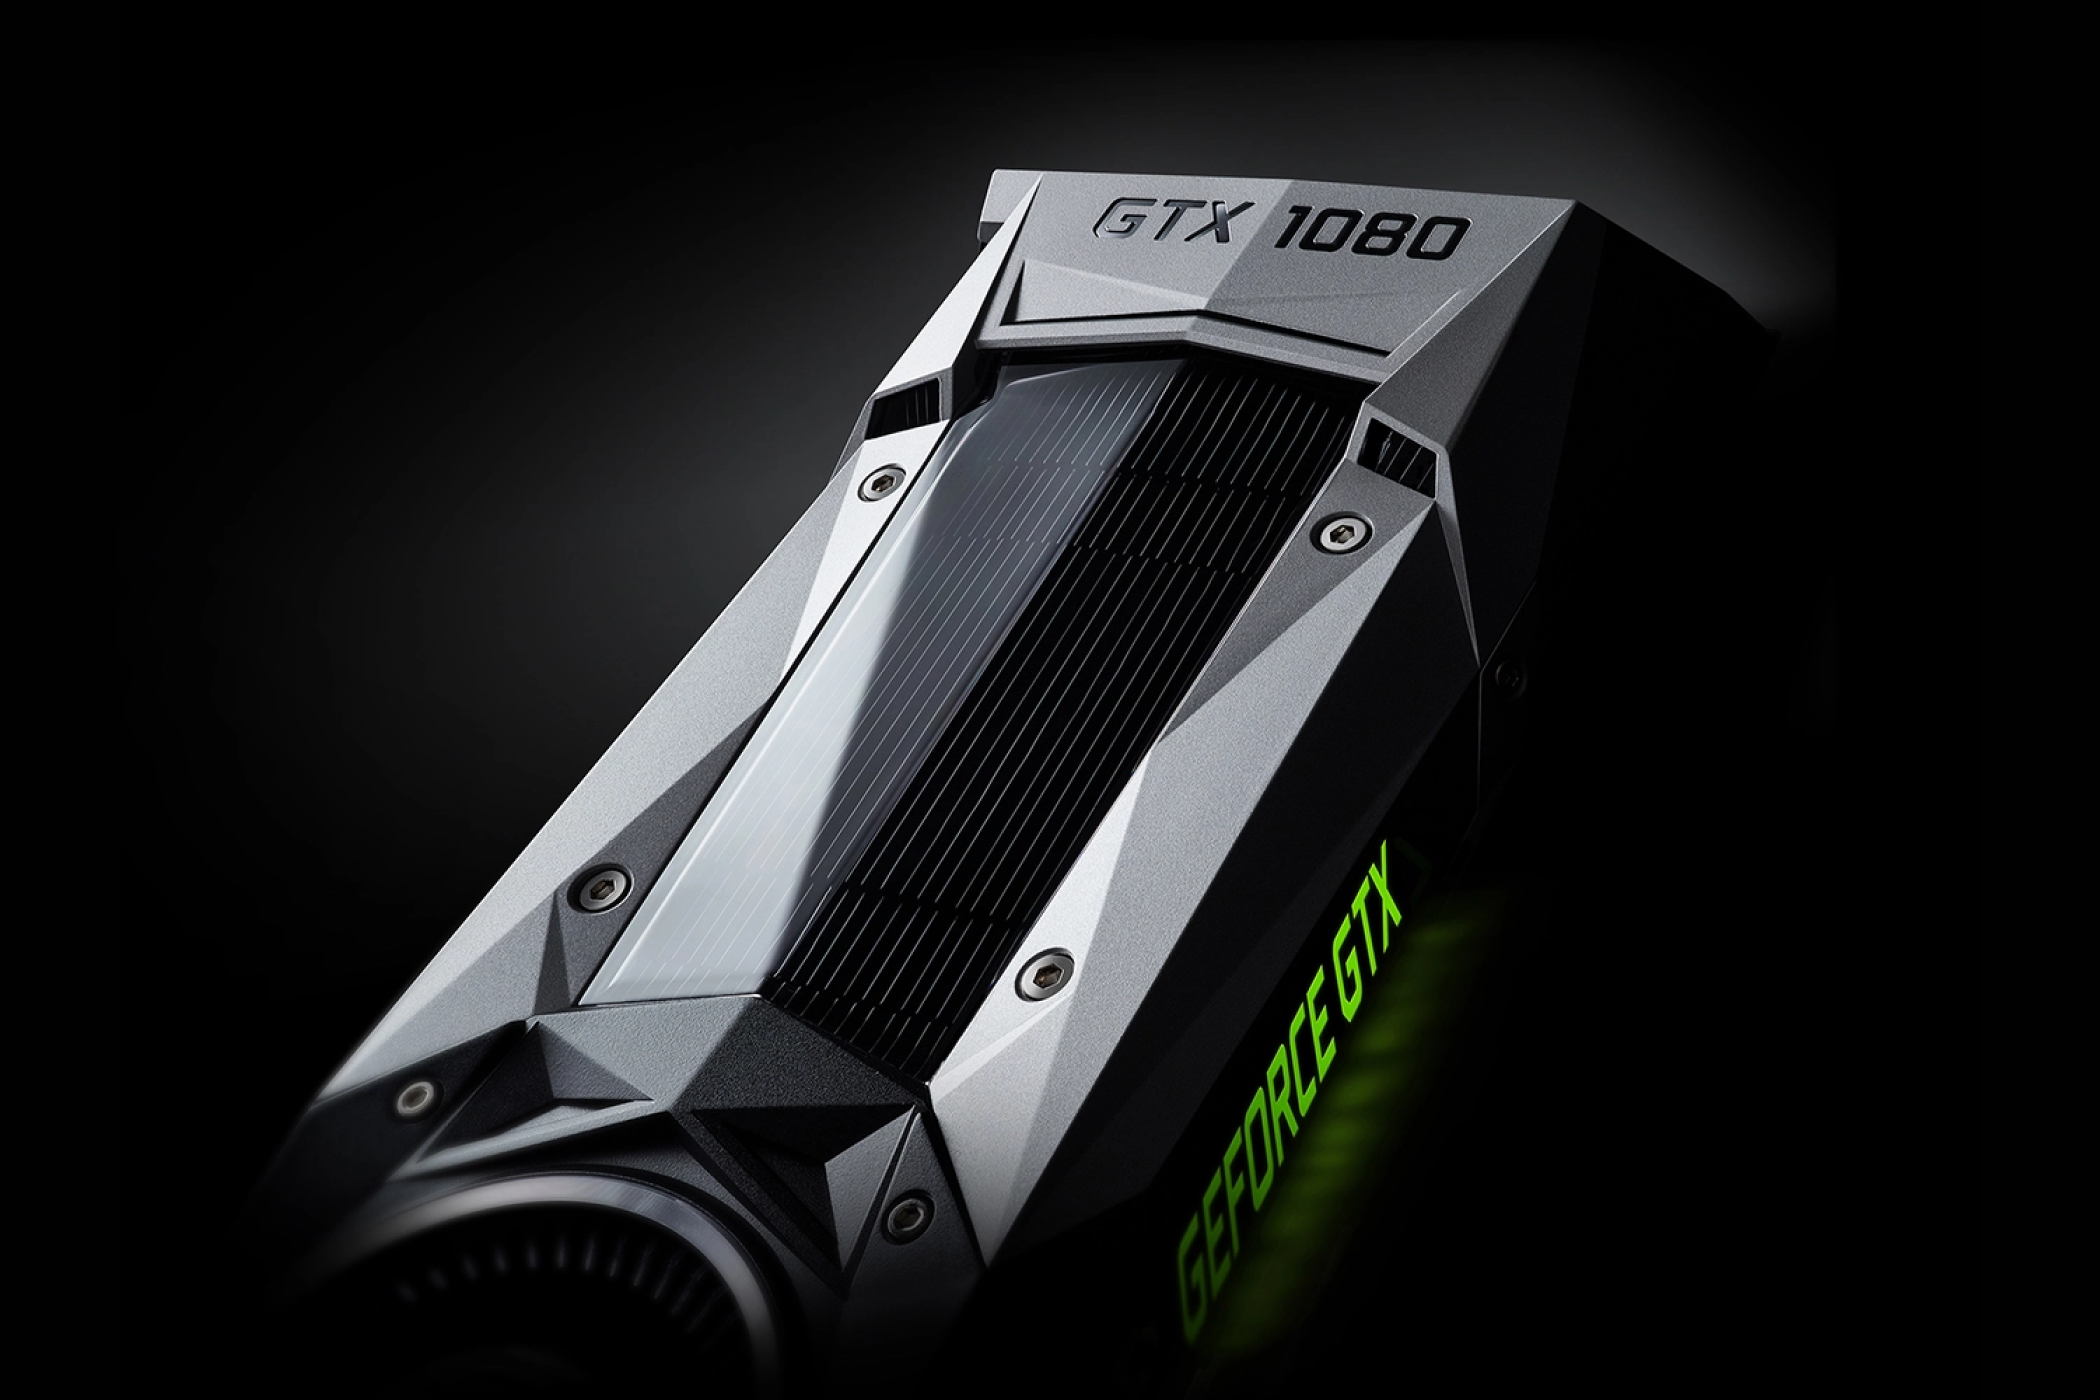 The Nvidia GTX 1080 GPU.